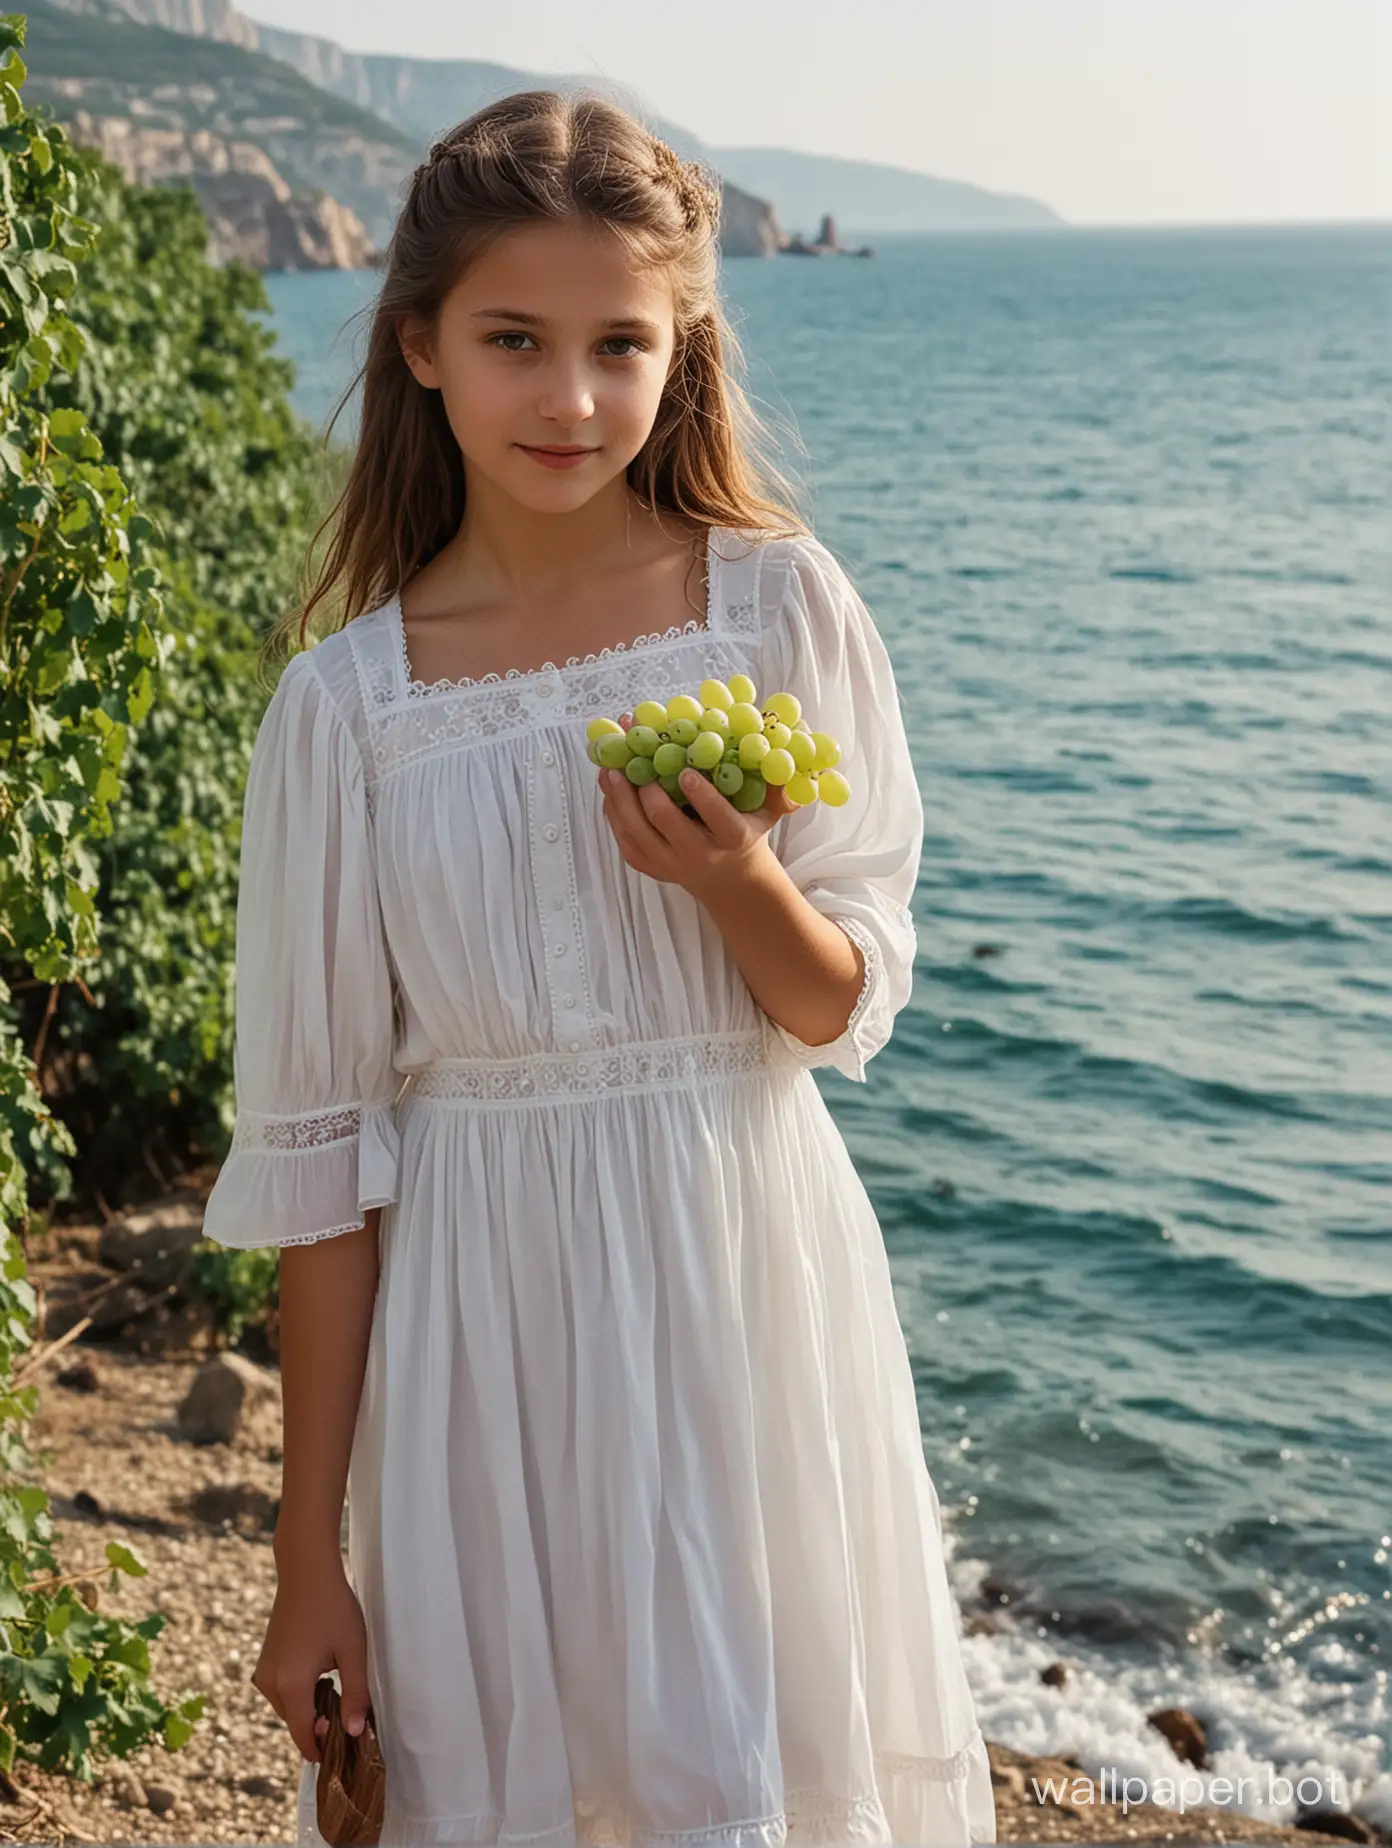 Крым, возле моря, девочка 11 лет в коротком белом платье с гроздью винограда в руках